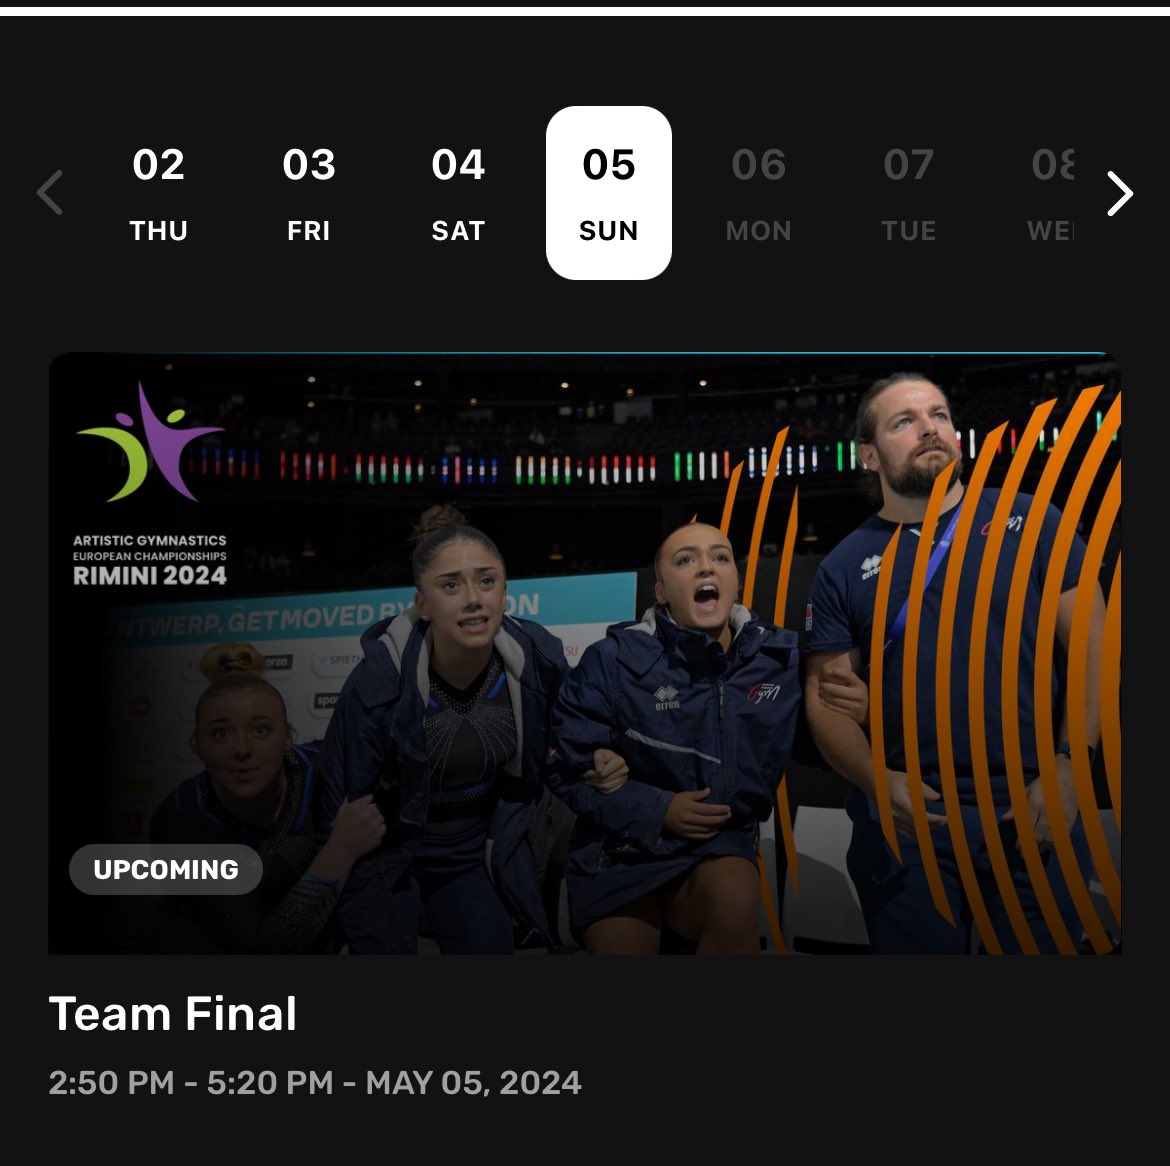 Je valide +++ la photo choisie pour la finale équipe sur Eurovision Sport!!!